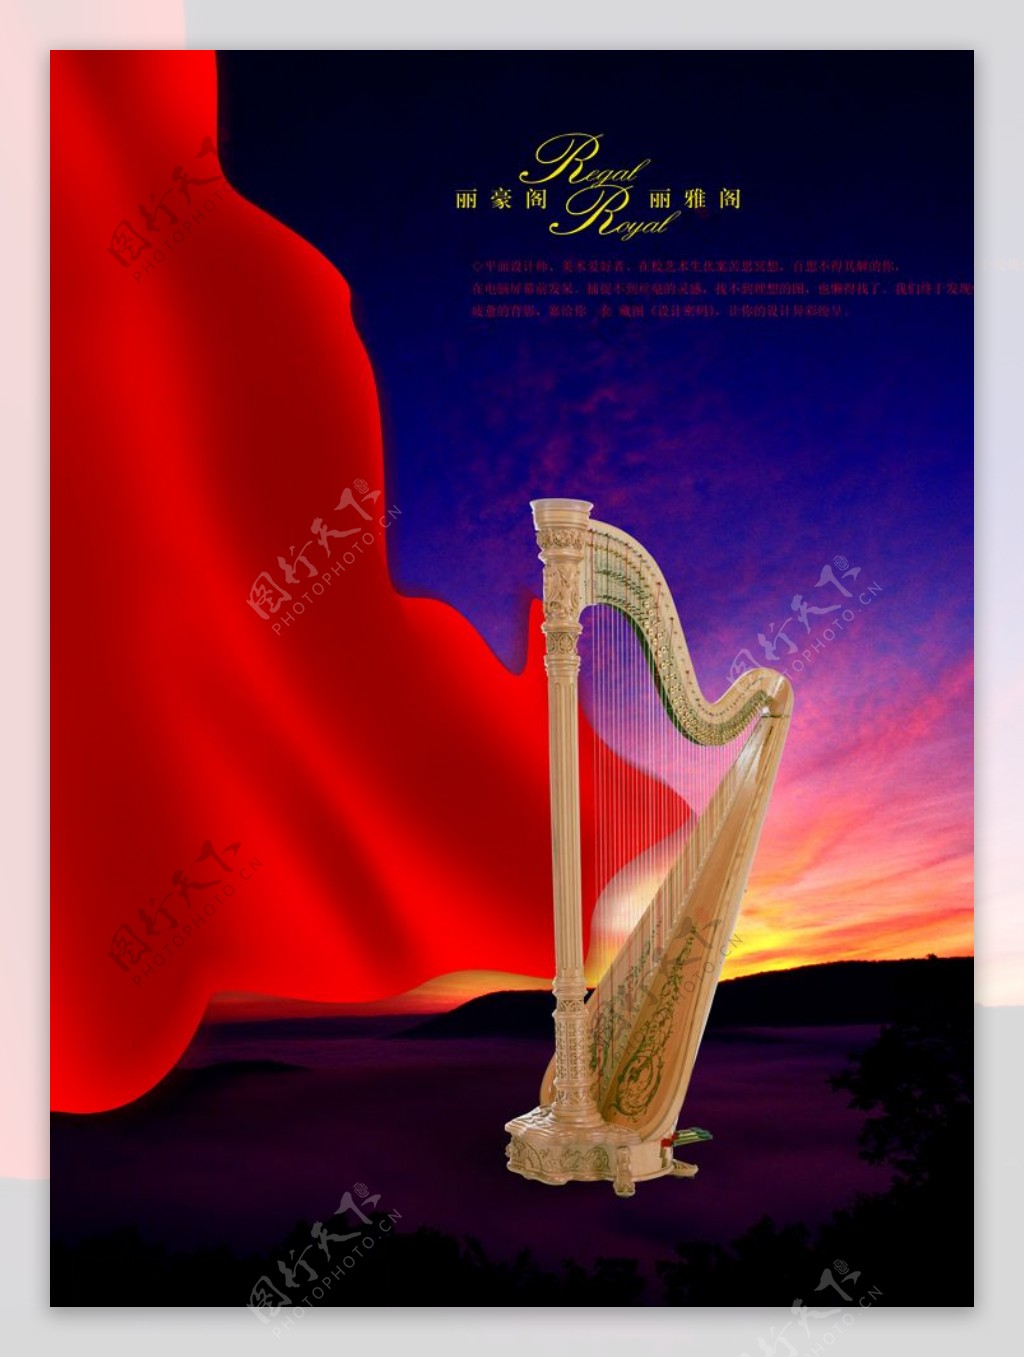 竖琴Harp